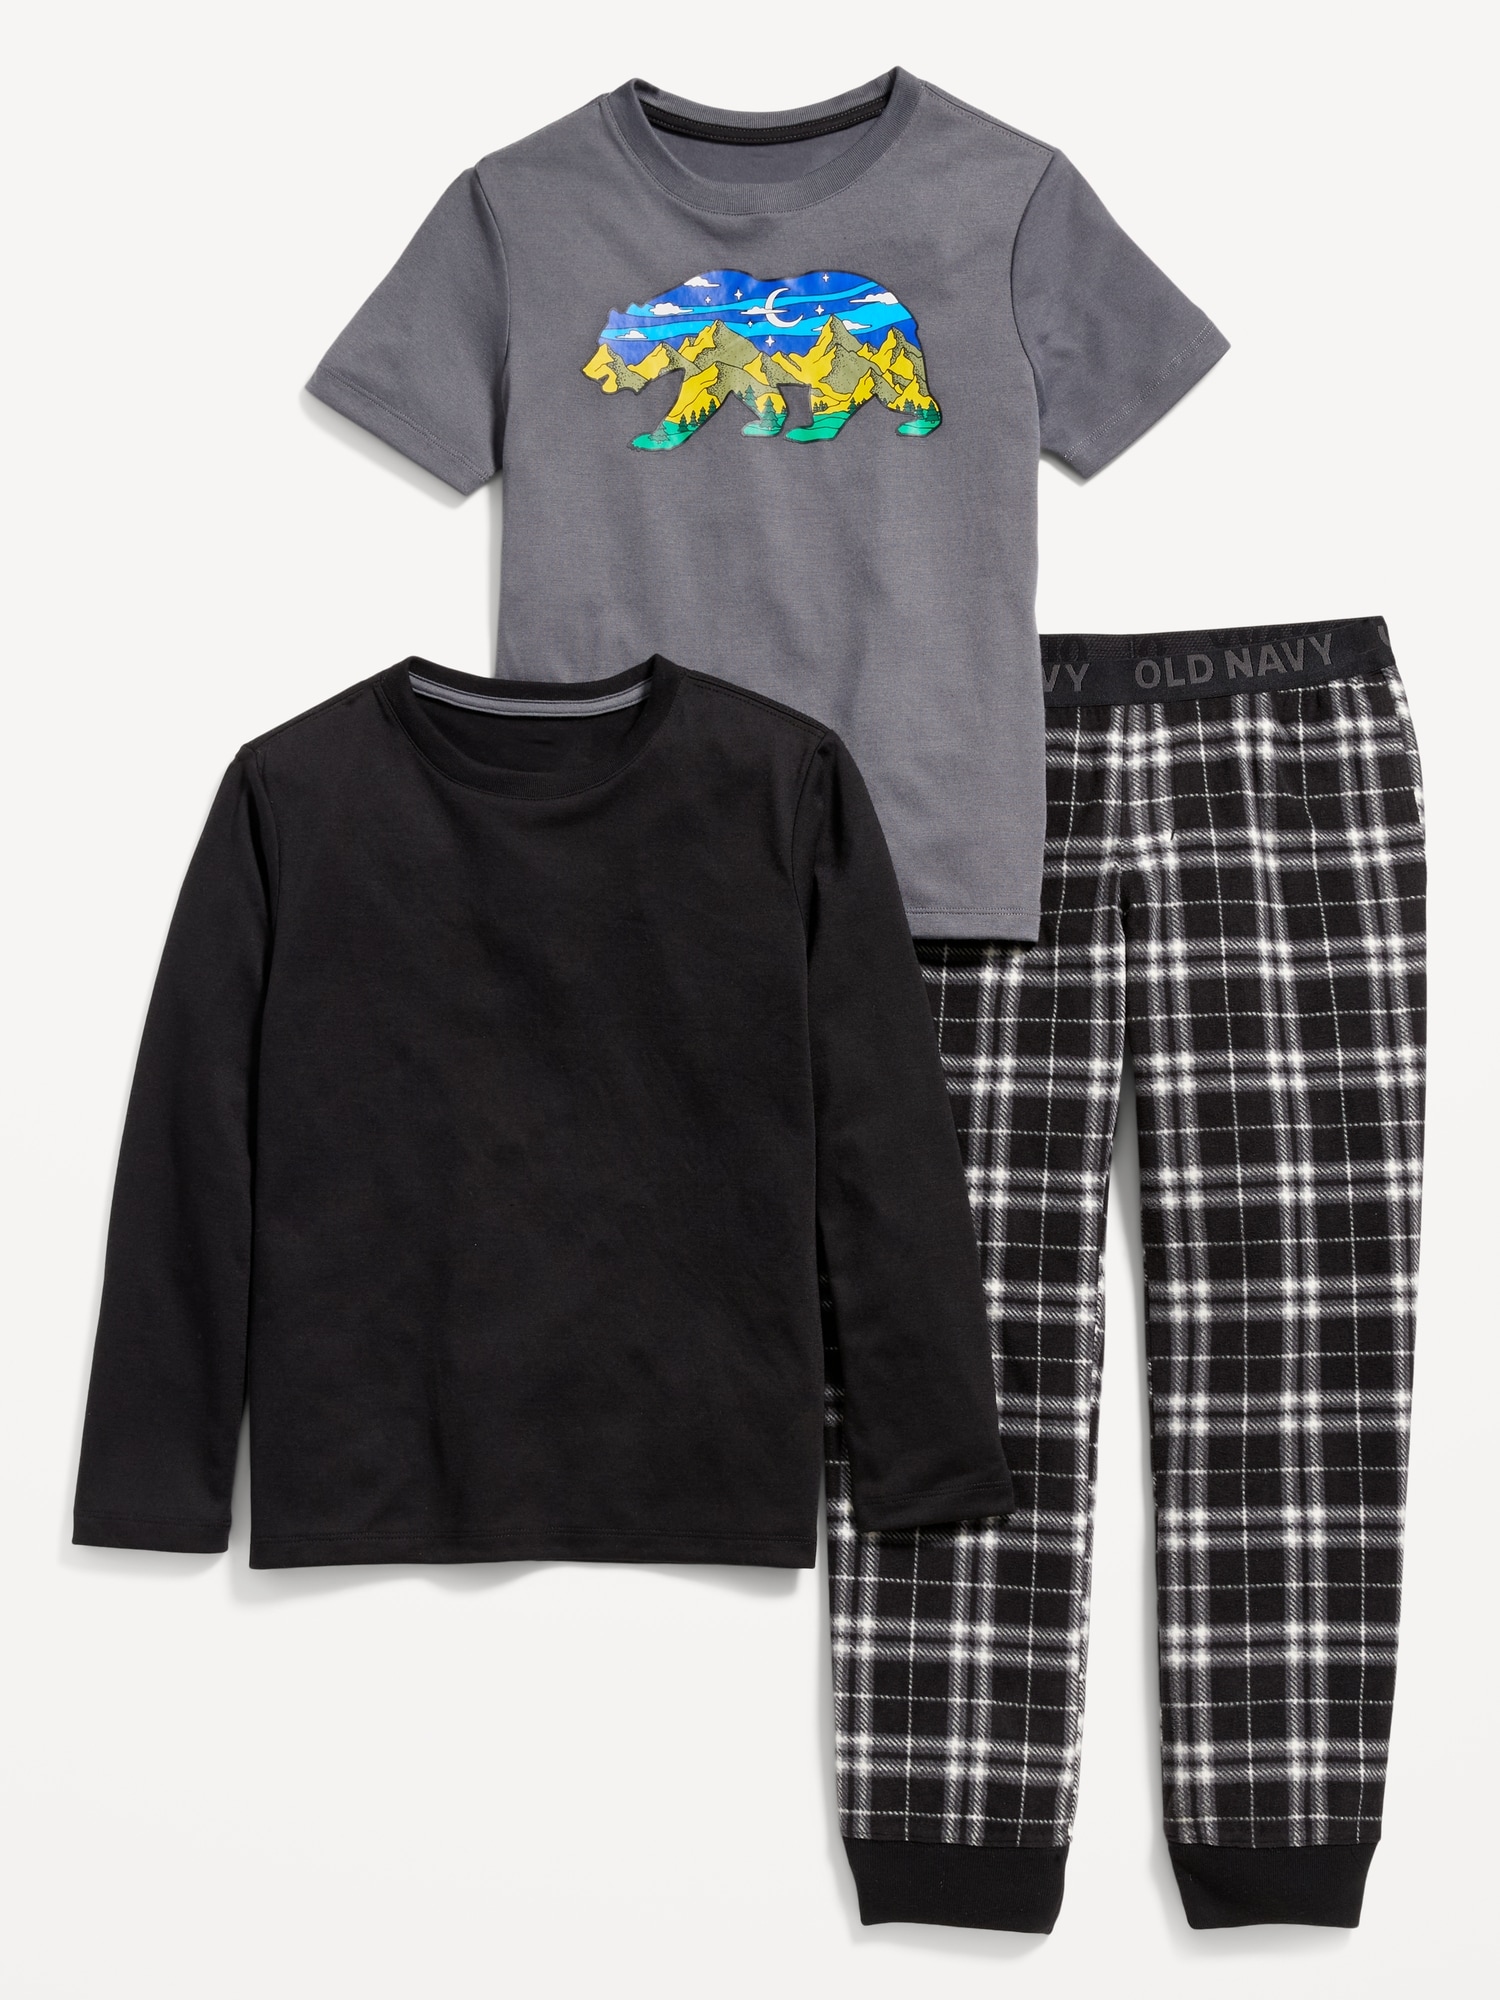 3-Piece Printed Pajama Jogger Pants Set for Boys